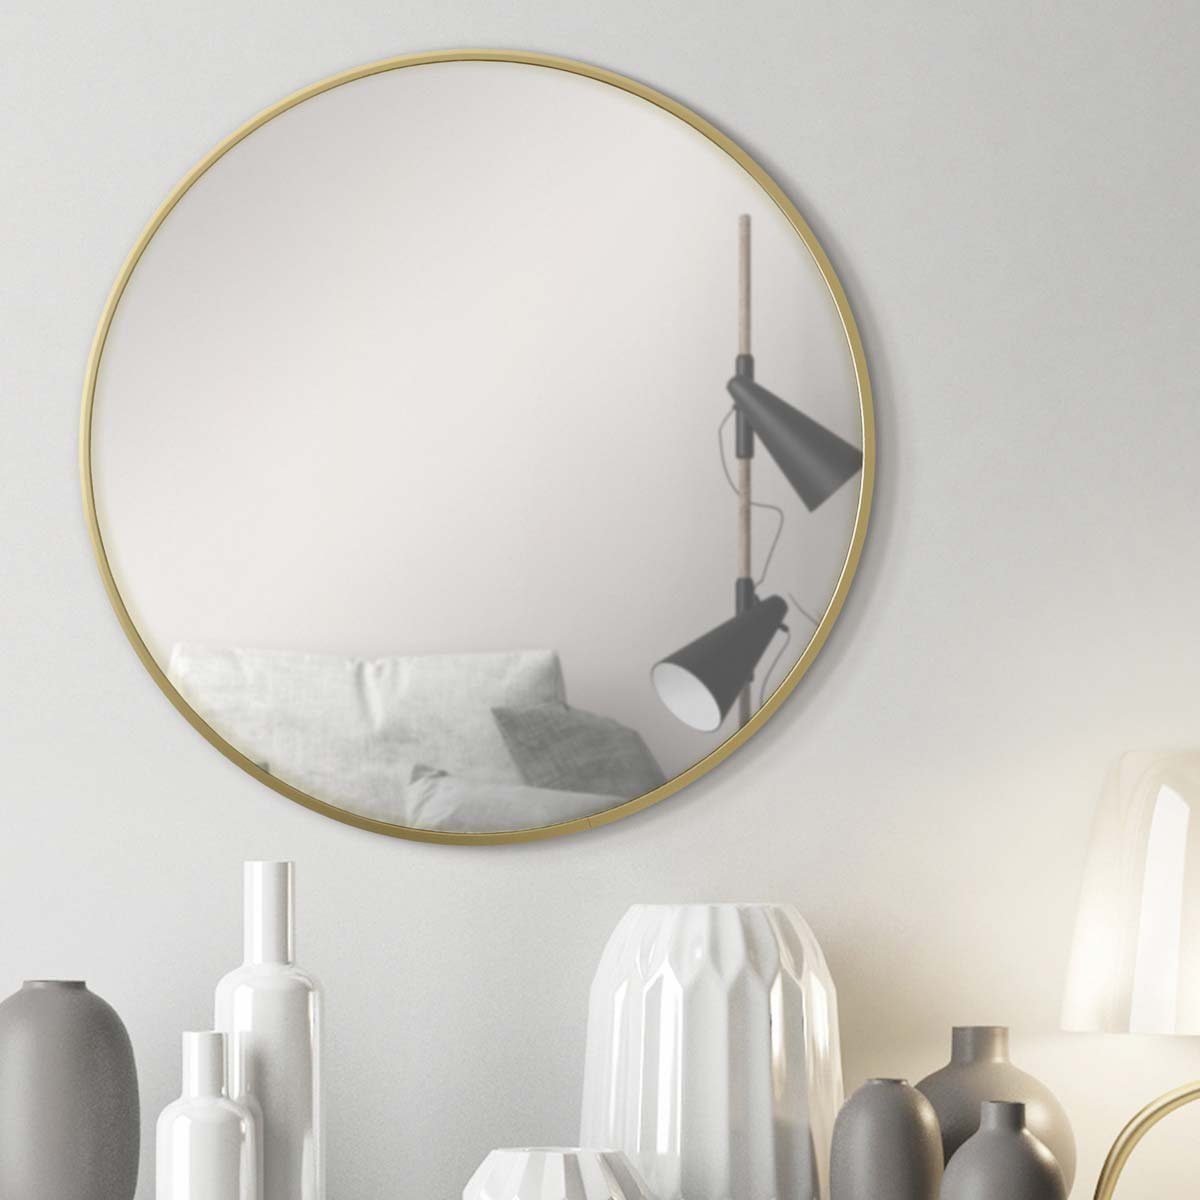 PHOTOLINI Spiegel rund mit Metallrahmen, eleganter Wandspiegel, schmaler Rahmen Gold